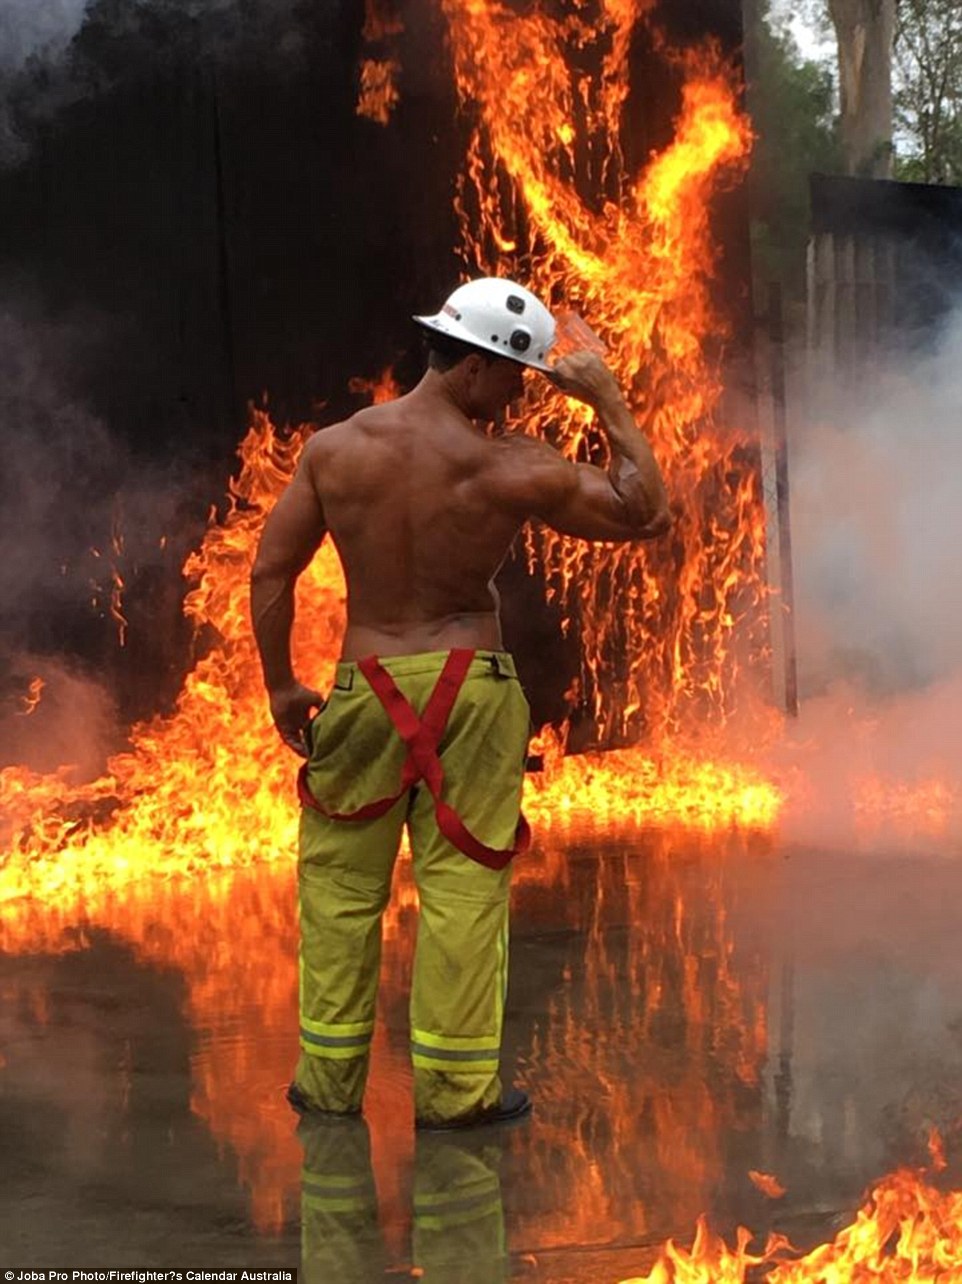 Фотографии со съемок благотворительного календаря с участием раздетых пожарных